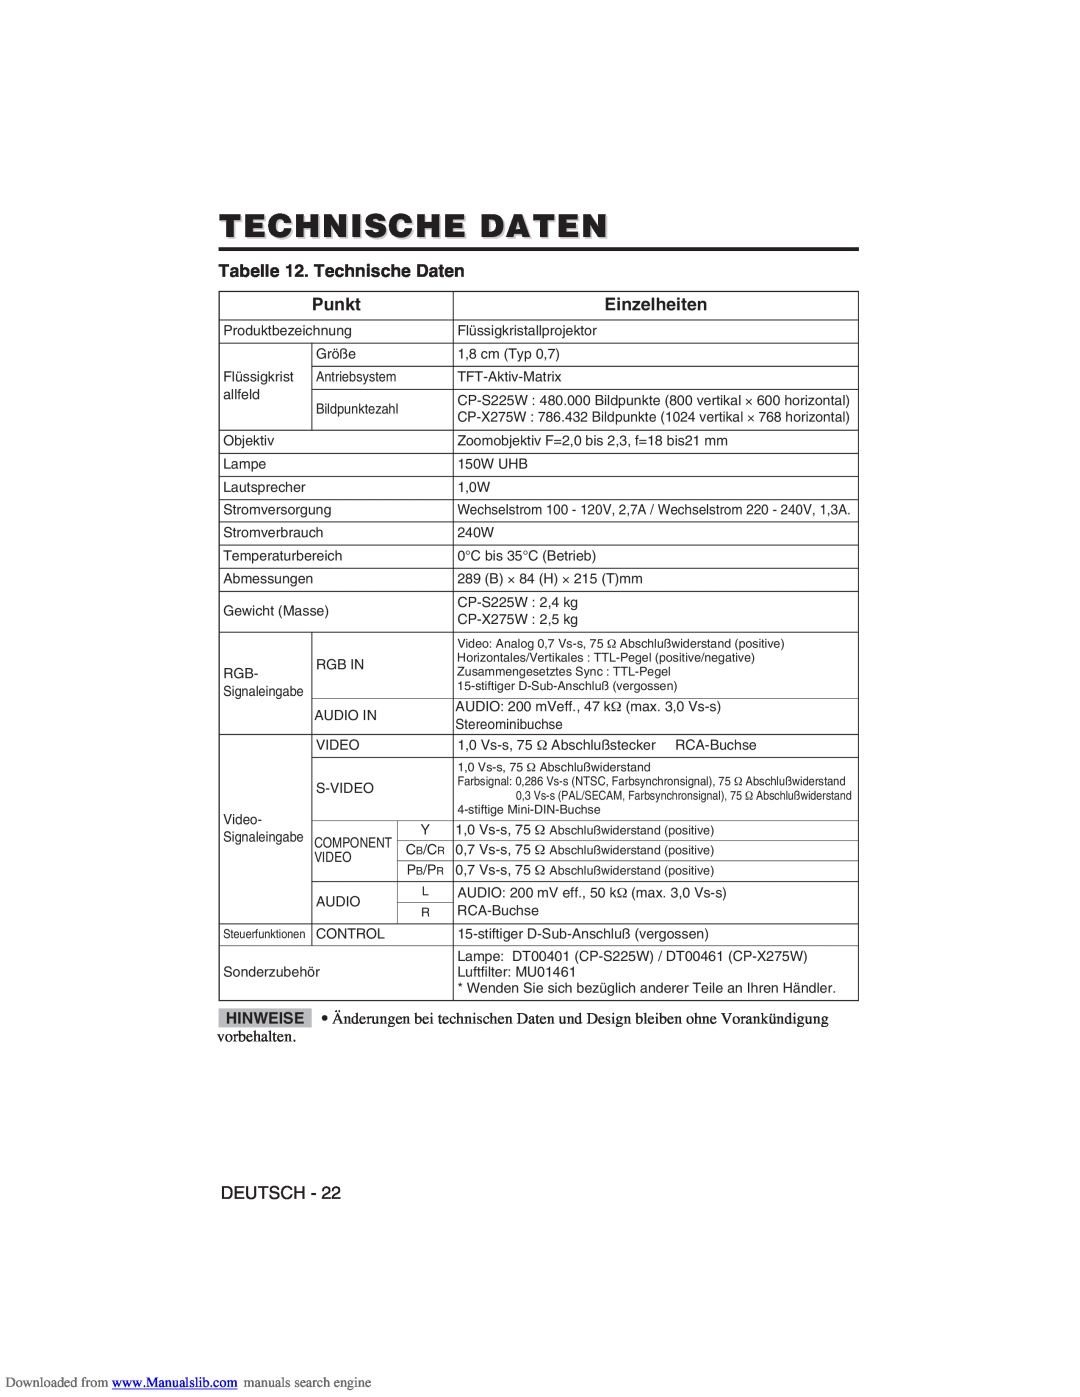 Hitachi CP-X275W user manual Tabelle 12. Technische Daten, Einzelheiten, Punkt 